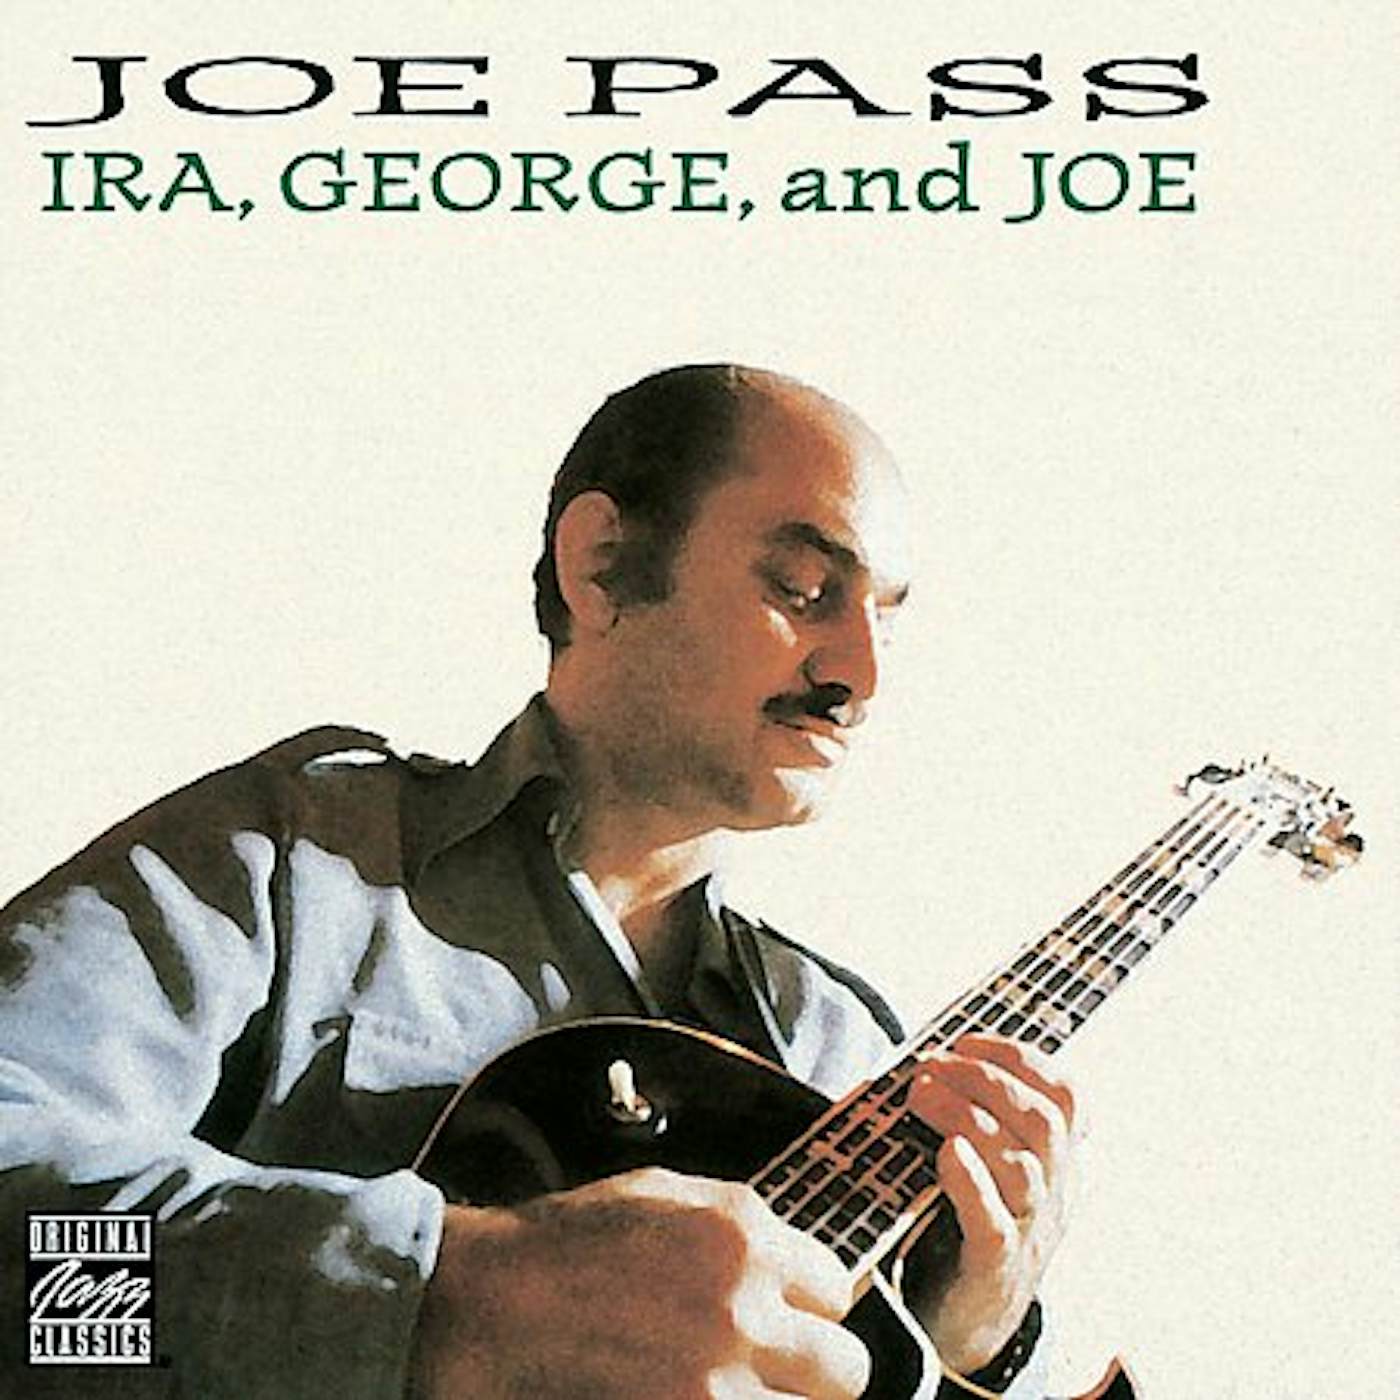 JOE PASS LOVES GERSHWIN: IRA GEORGE & JOE CD